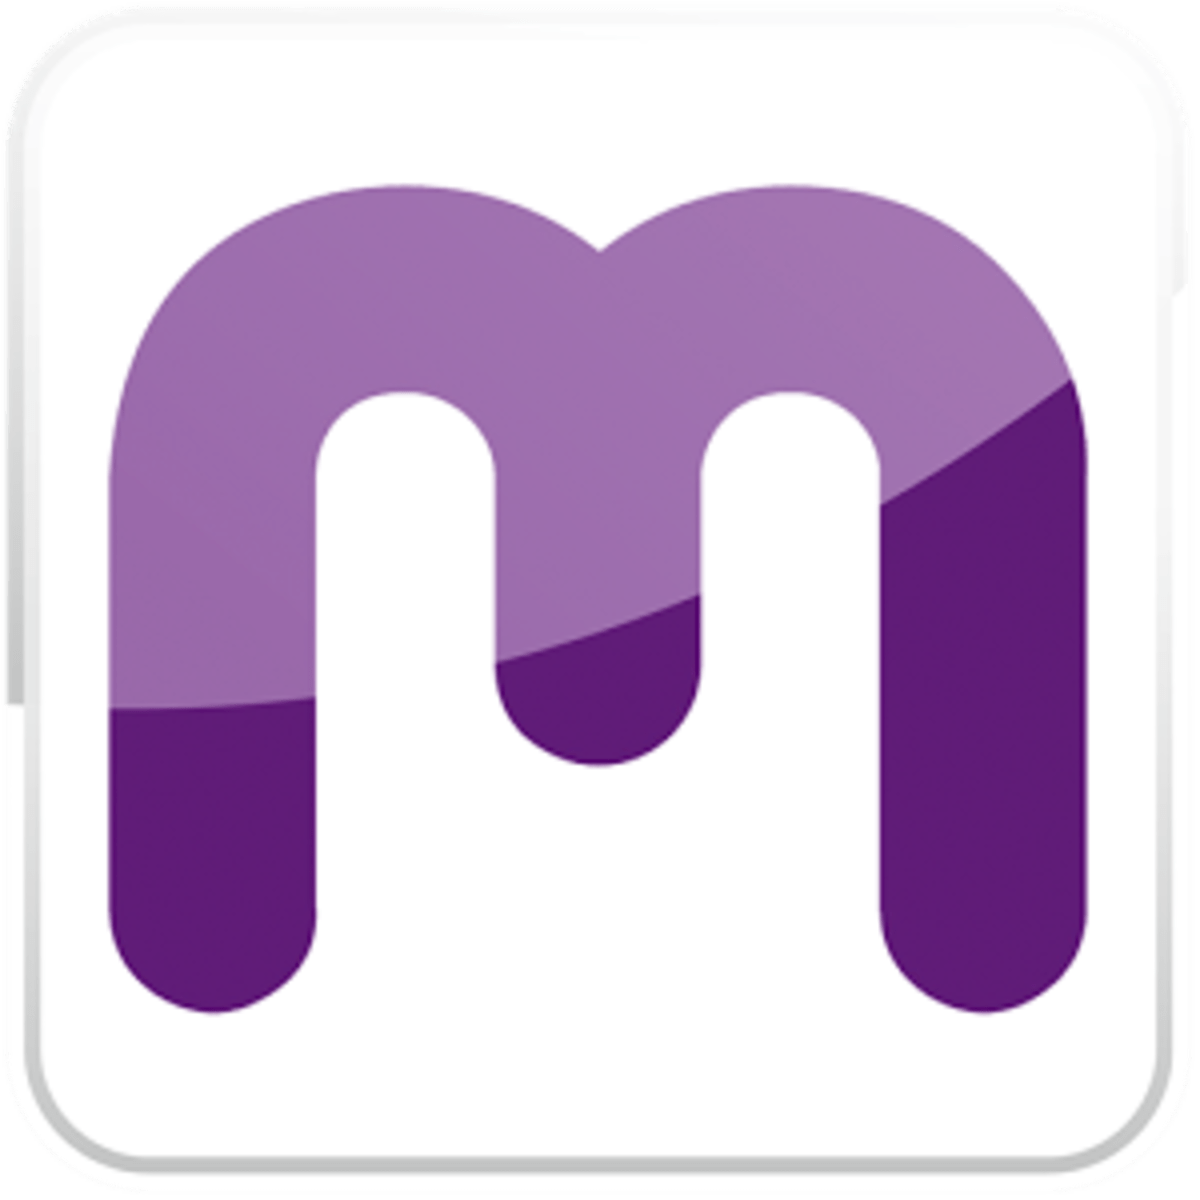 MIMOV (Disponible en AppStore y GooglePlay) | Domestika